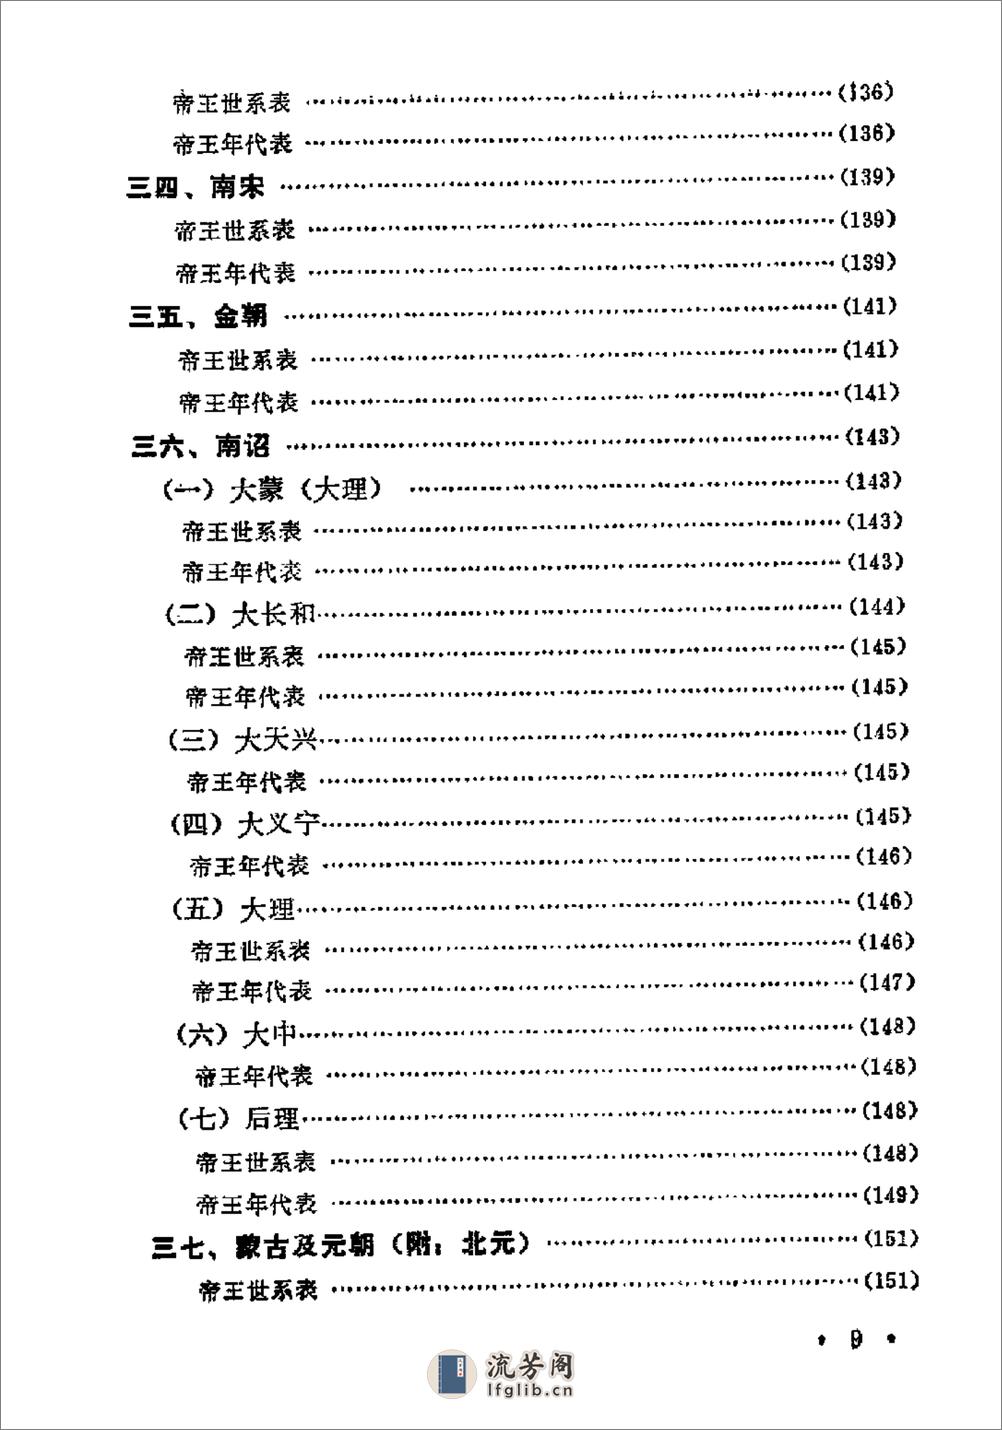 中国历史纪年简表·陈作良·中央党校1985 - 第12页预览图